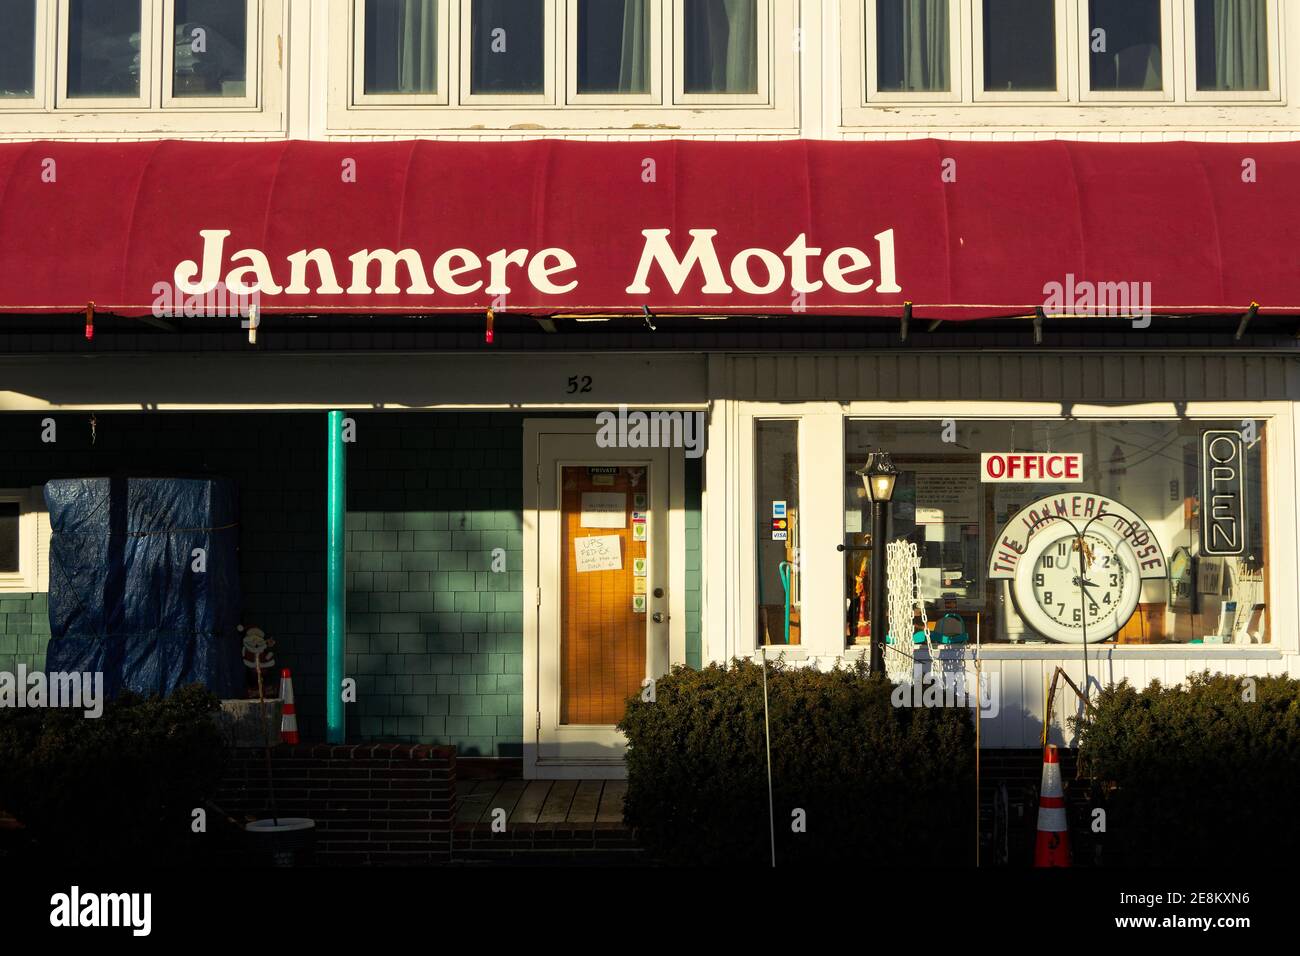 Hampton Beach - Hampton, New Hampshire - il Janmere Motel si erge non occupato dal lungomare mentre il sole tramonta in una serata invernale fuori stagione. Foto Stock